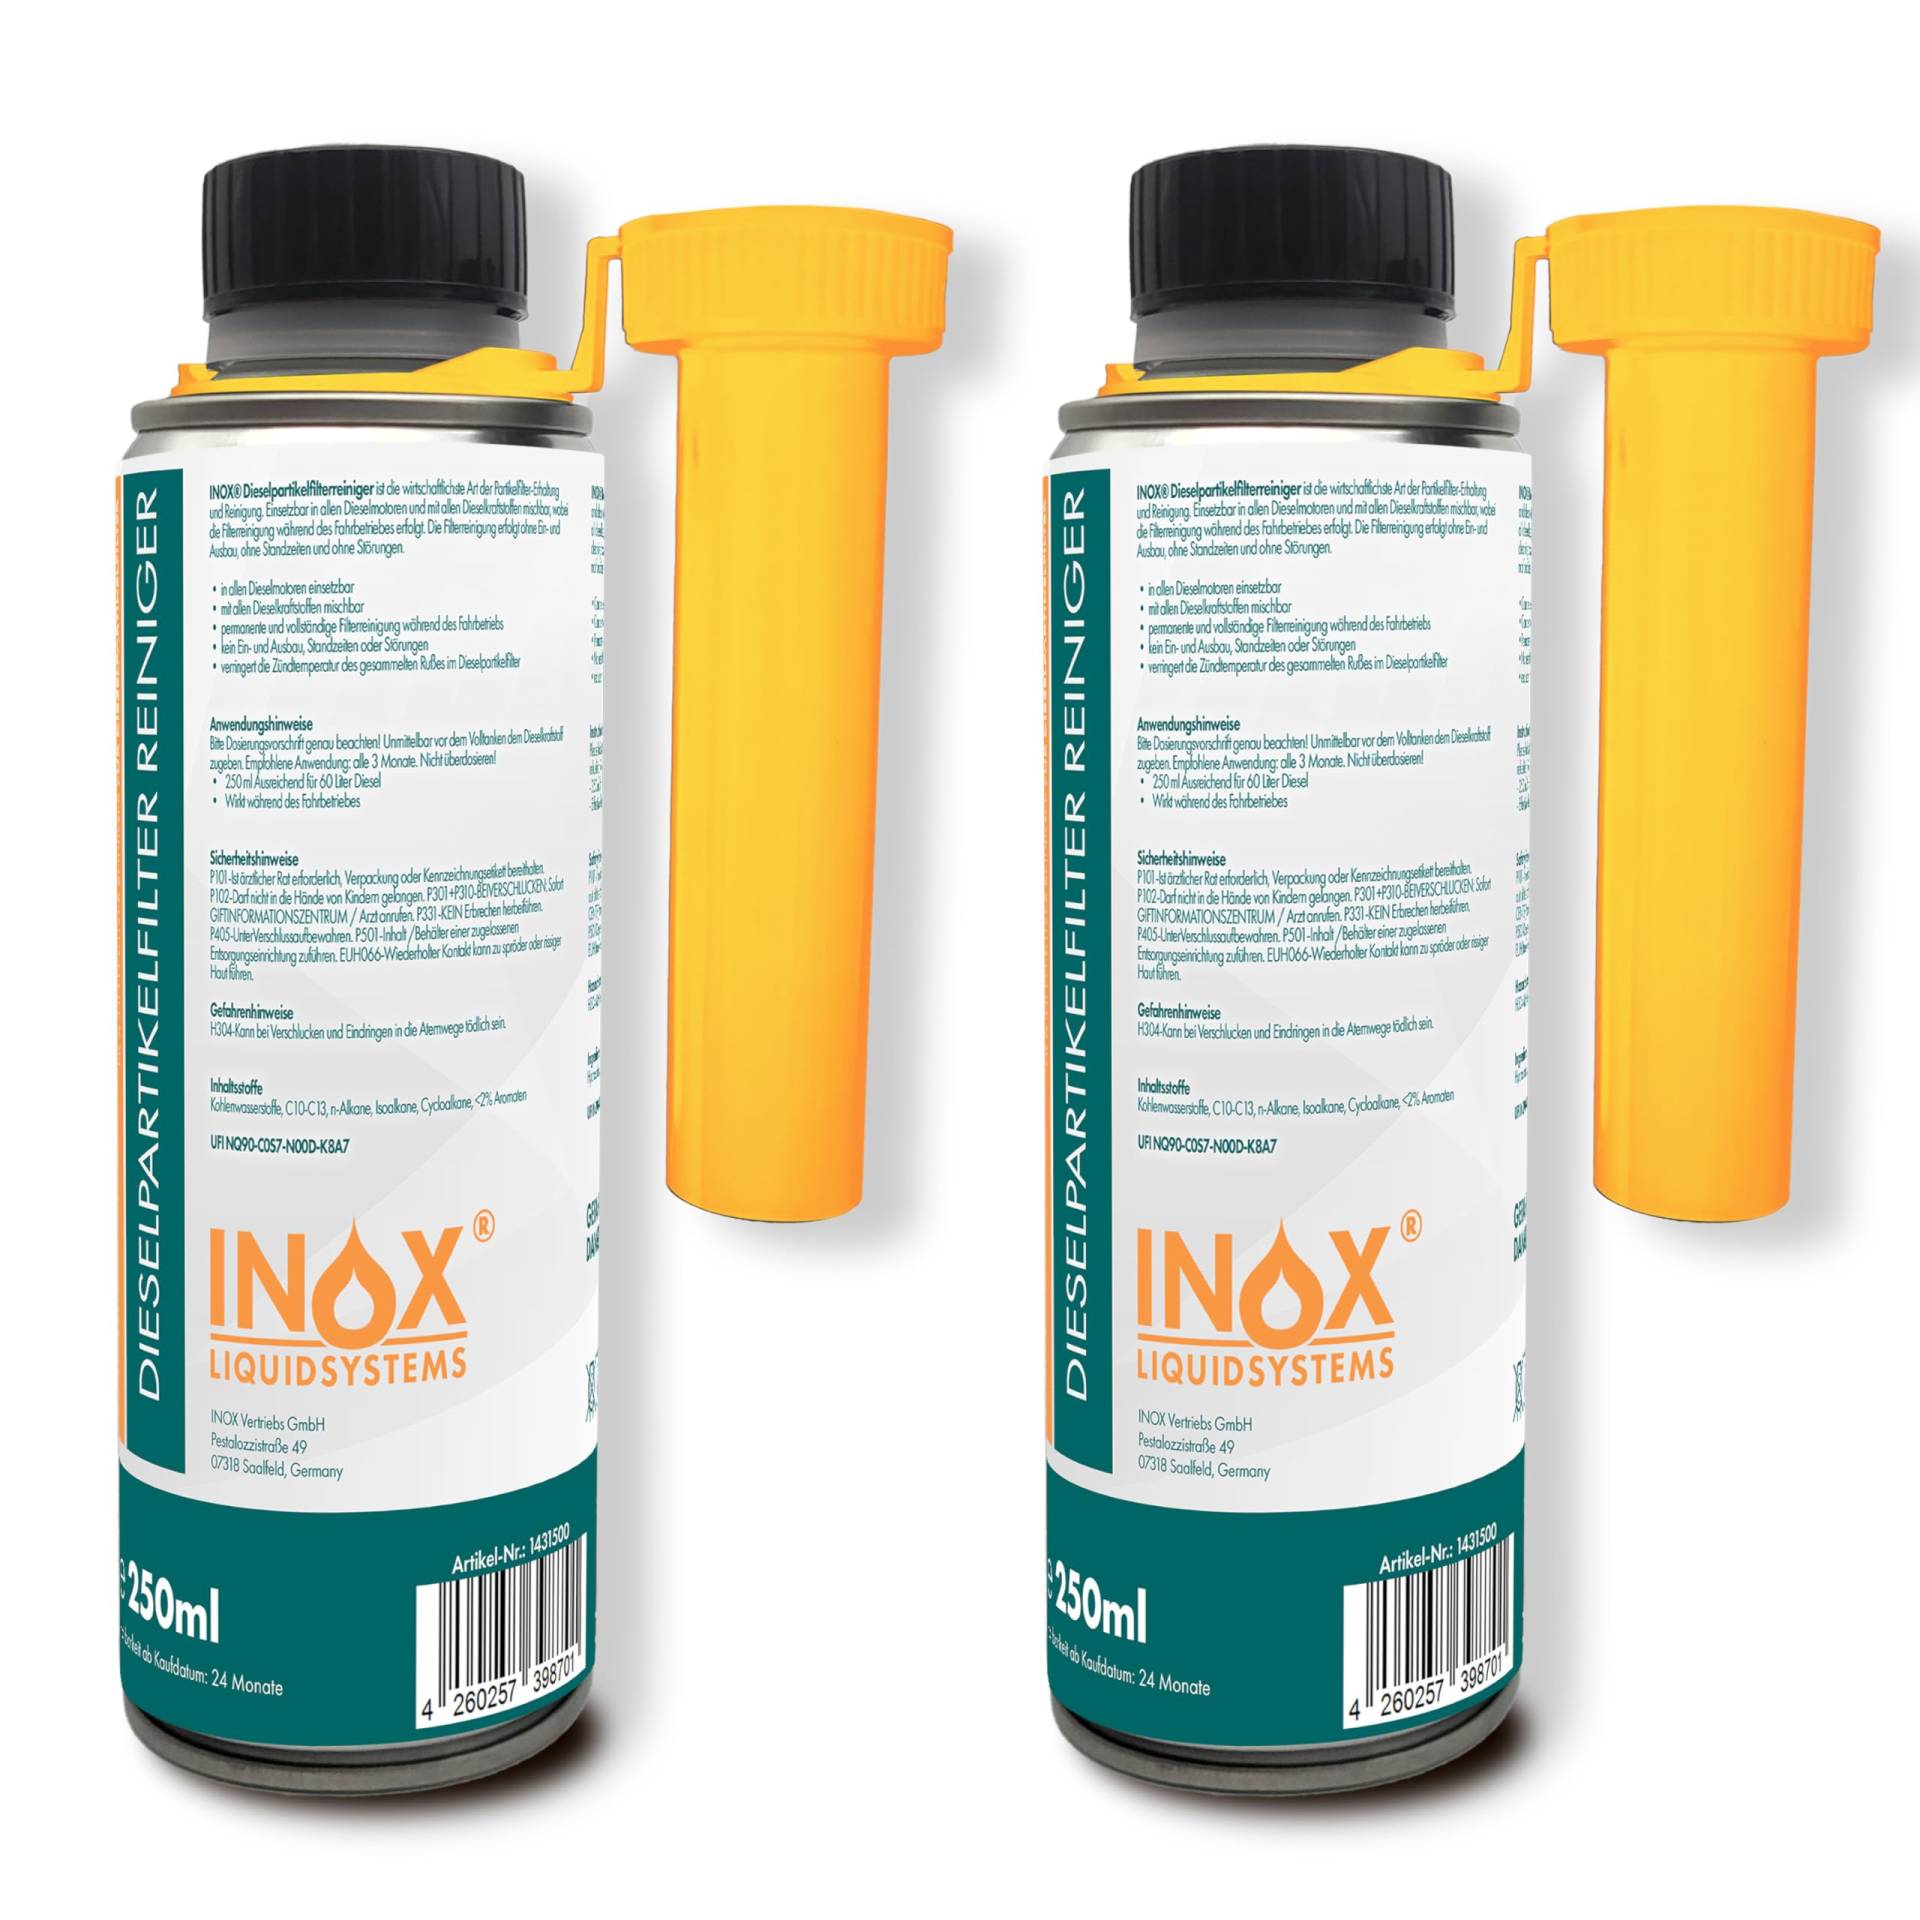 INOX® - Hochwirksamer Dieselpartikelfilter Reiniger 2 x 250ml | Diesel Additiv für alle Dieselmotoren | Dieselpartikelfilter Reiniger als Diesel Zusatz zur einfachen Anwendung von INOX-LIQUIDSYSTEMS